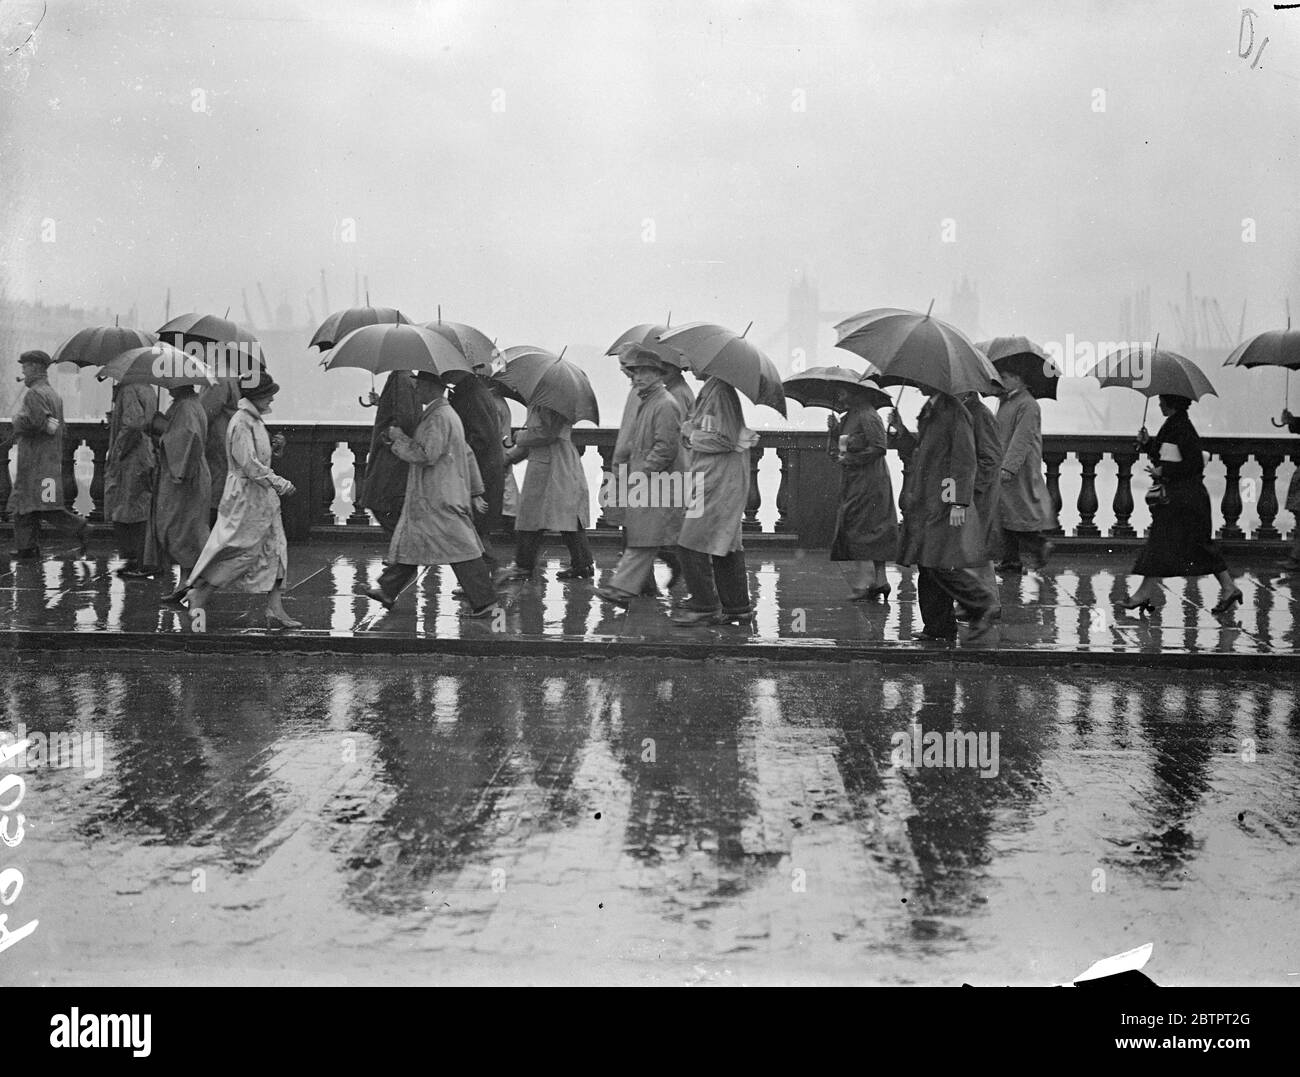 Londons Samstagstürmischen. Der trockenste 9. Oktober in Großbritannien seit sechs Jahren scheint nun seine Meinung geändert zu haben, und London wurde von sintflutartigen Regenfällen durchnässt, der schwerste seit vielen Monaten. Fotoausstellungen, Fußgänger, die unter Regenschirmen über die London Bridge tragen. 23. Oktober 1937 Stockfoto